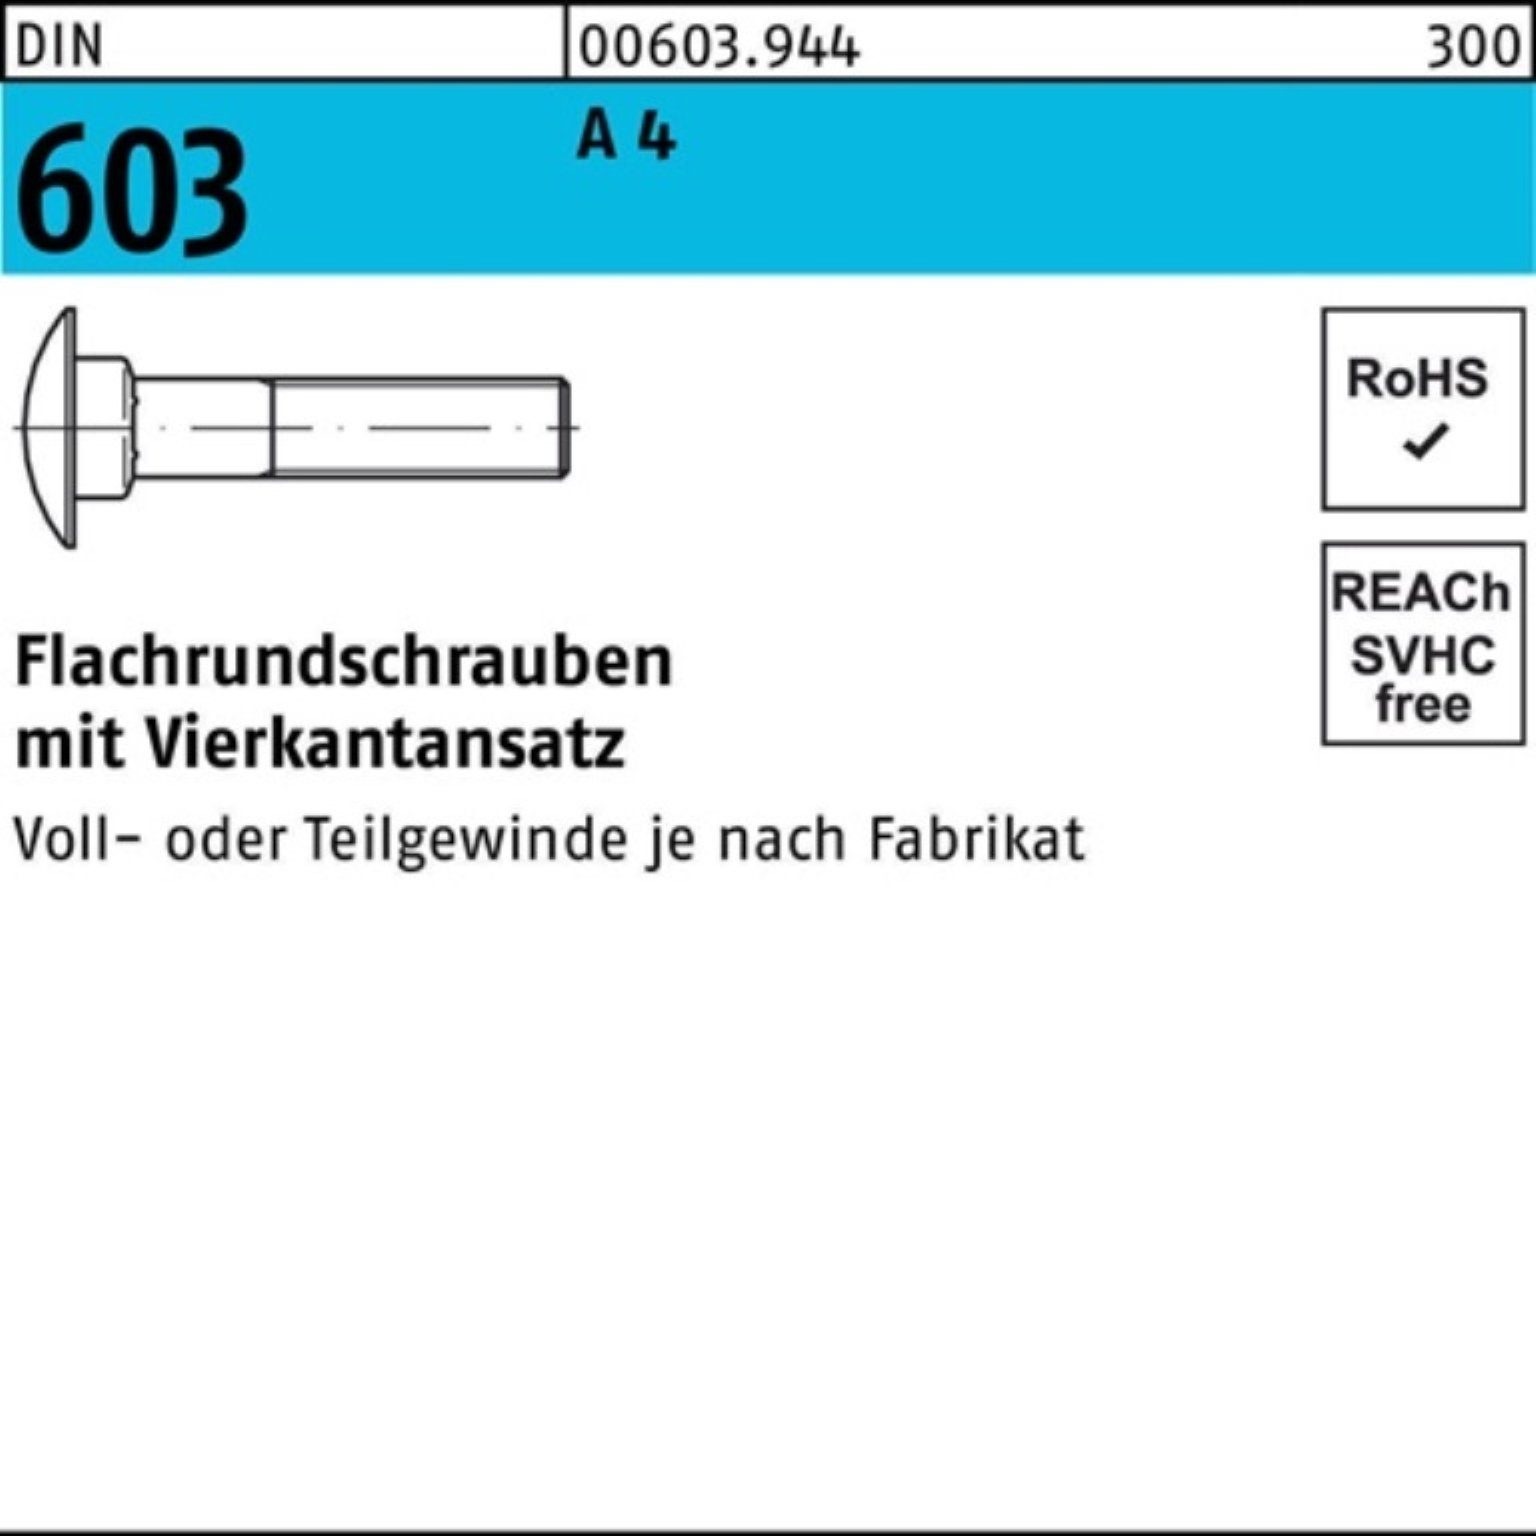 Reyher Schraube 100er M8x Pack A DIN Stü 25 40 Vierkantansatz Flachrundschraube 4 603